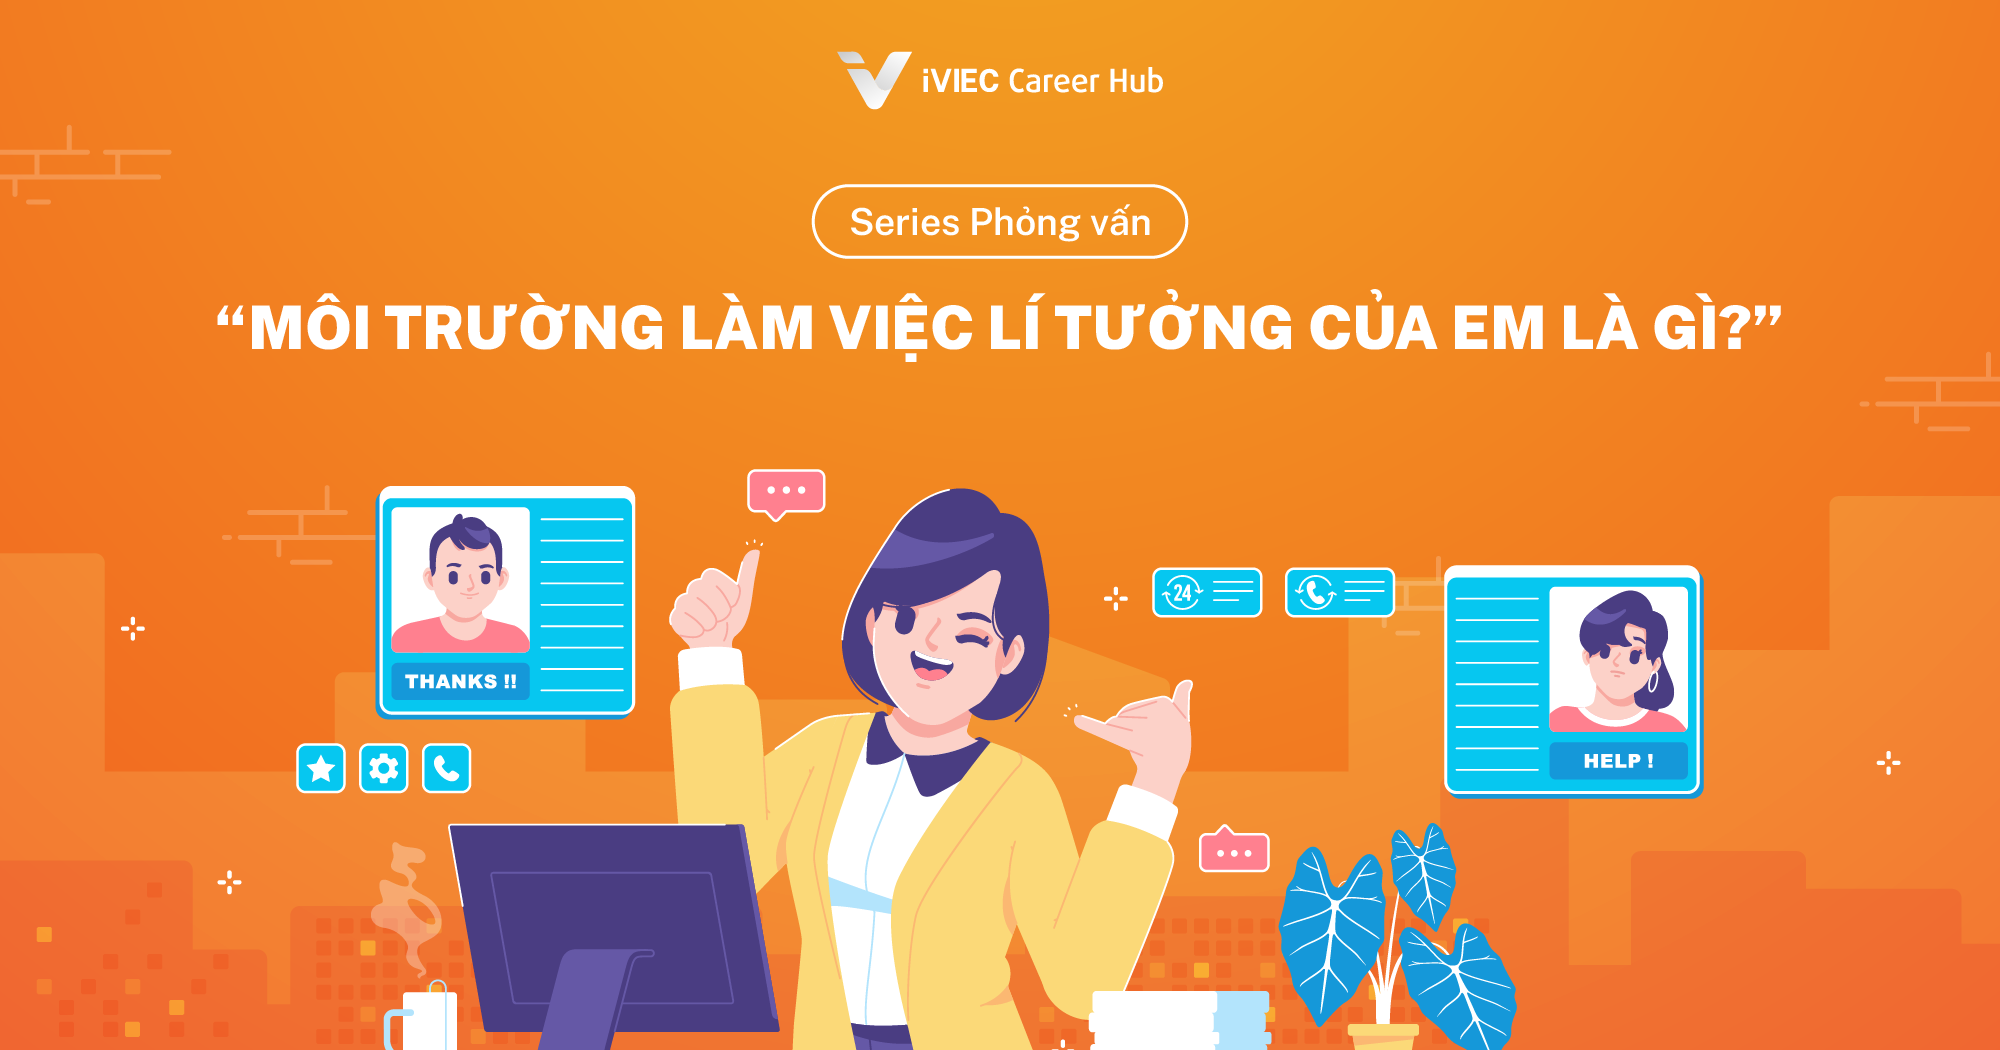 Series Phỏng vấn: “Môi trường làm việc lí tưởng của em là gì?” - Mẫu Tiếng Anh và Tiếng Việt 